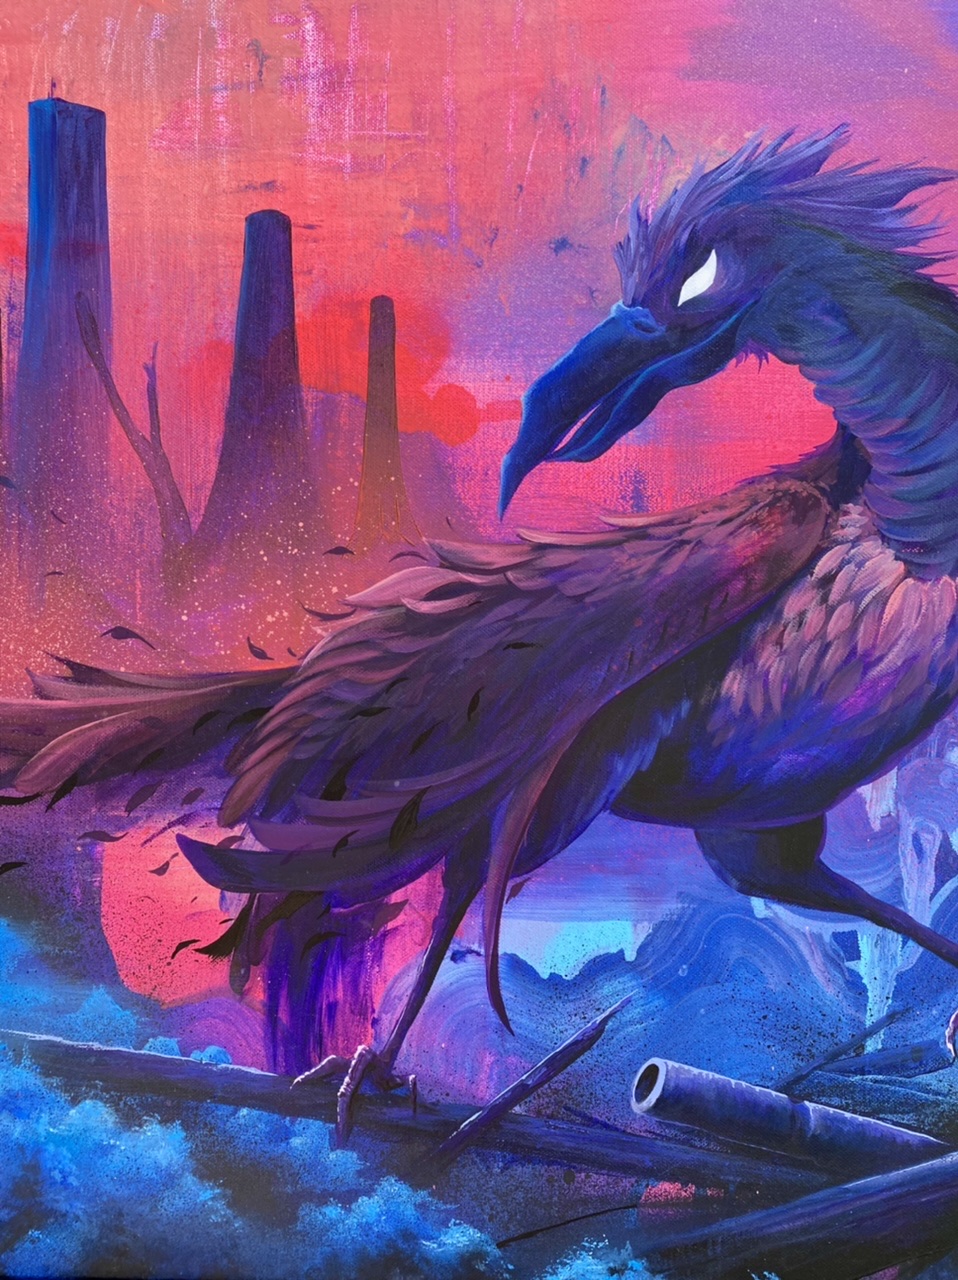 Ein Kunstwerk in pinken und blauen Farbtönen, das einen großen Vogel auf der rechten und Schornsteine auf der linken Seite zeigt.